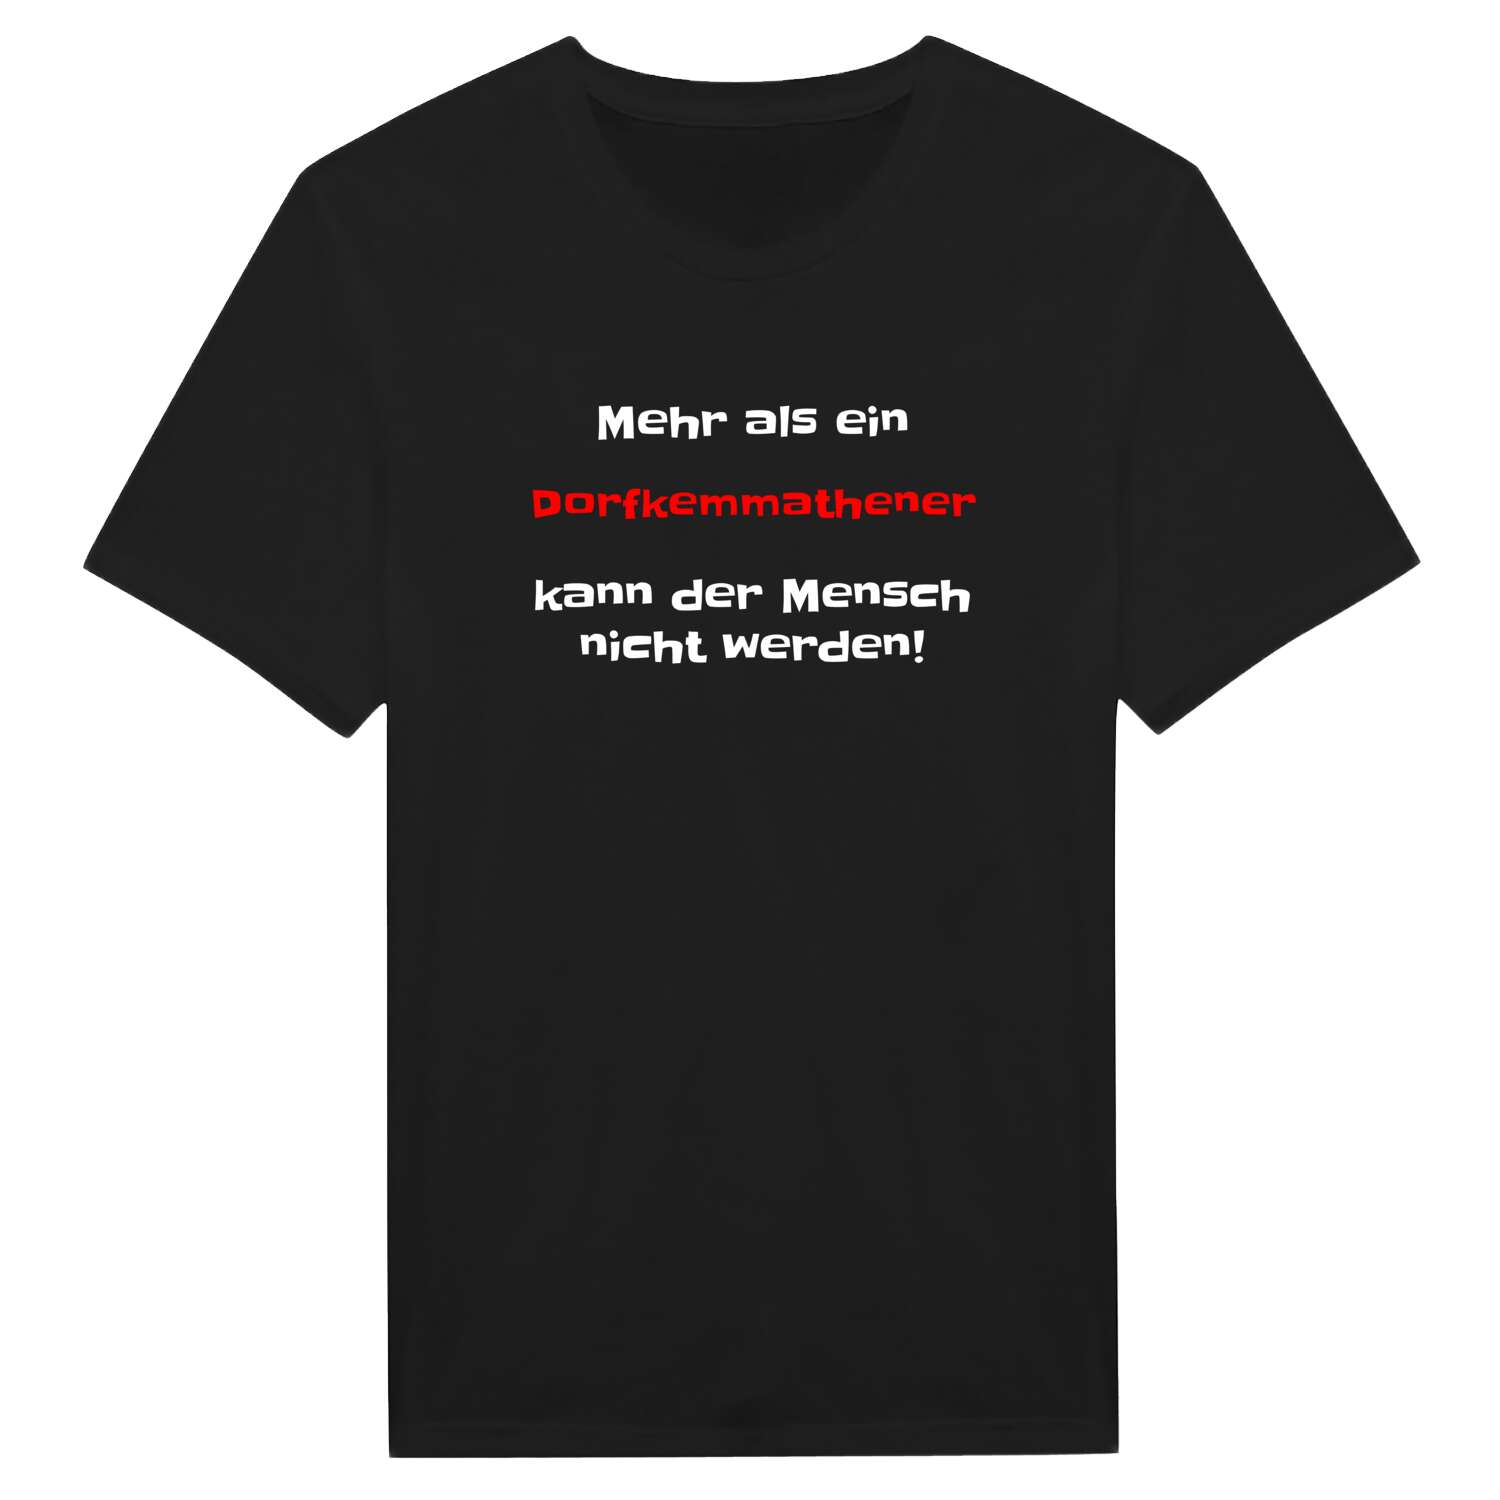 Dorfkemmathen T-Shirt »Mehr als ein«